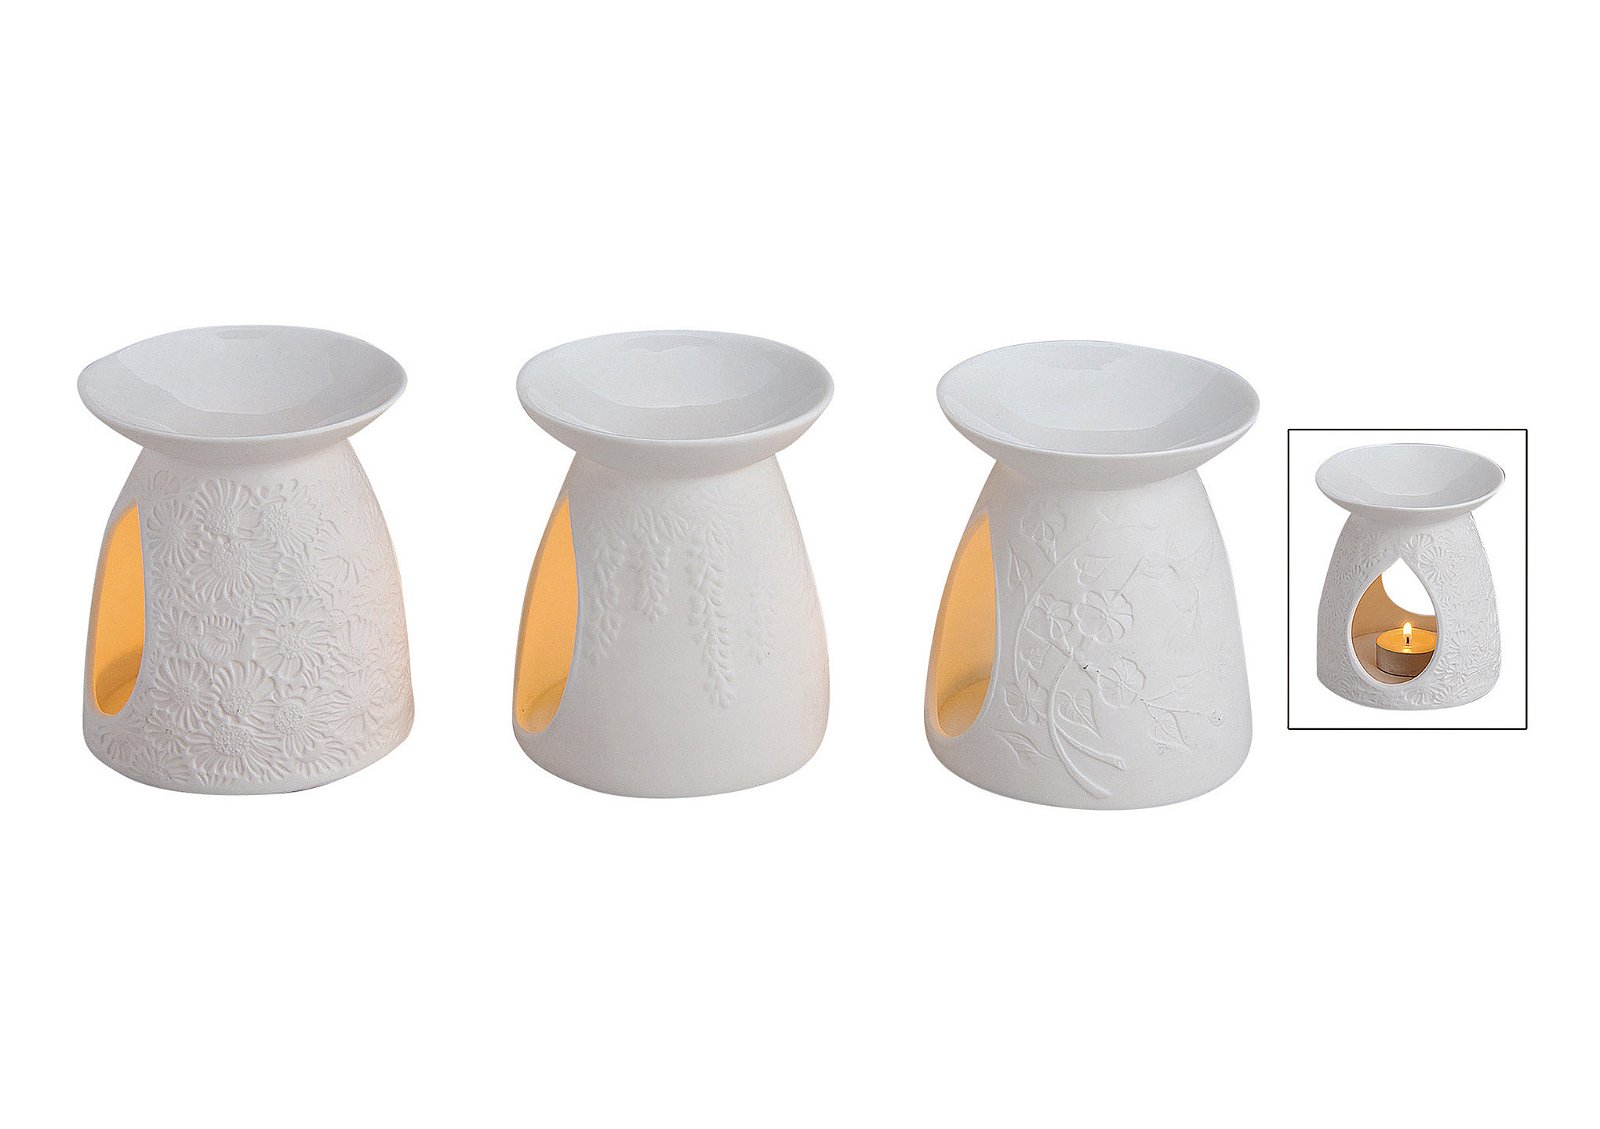 Fragrance burner white porcelain 3-ass. 10x12cm